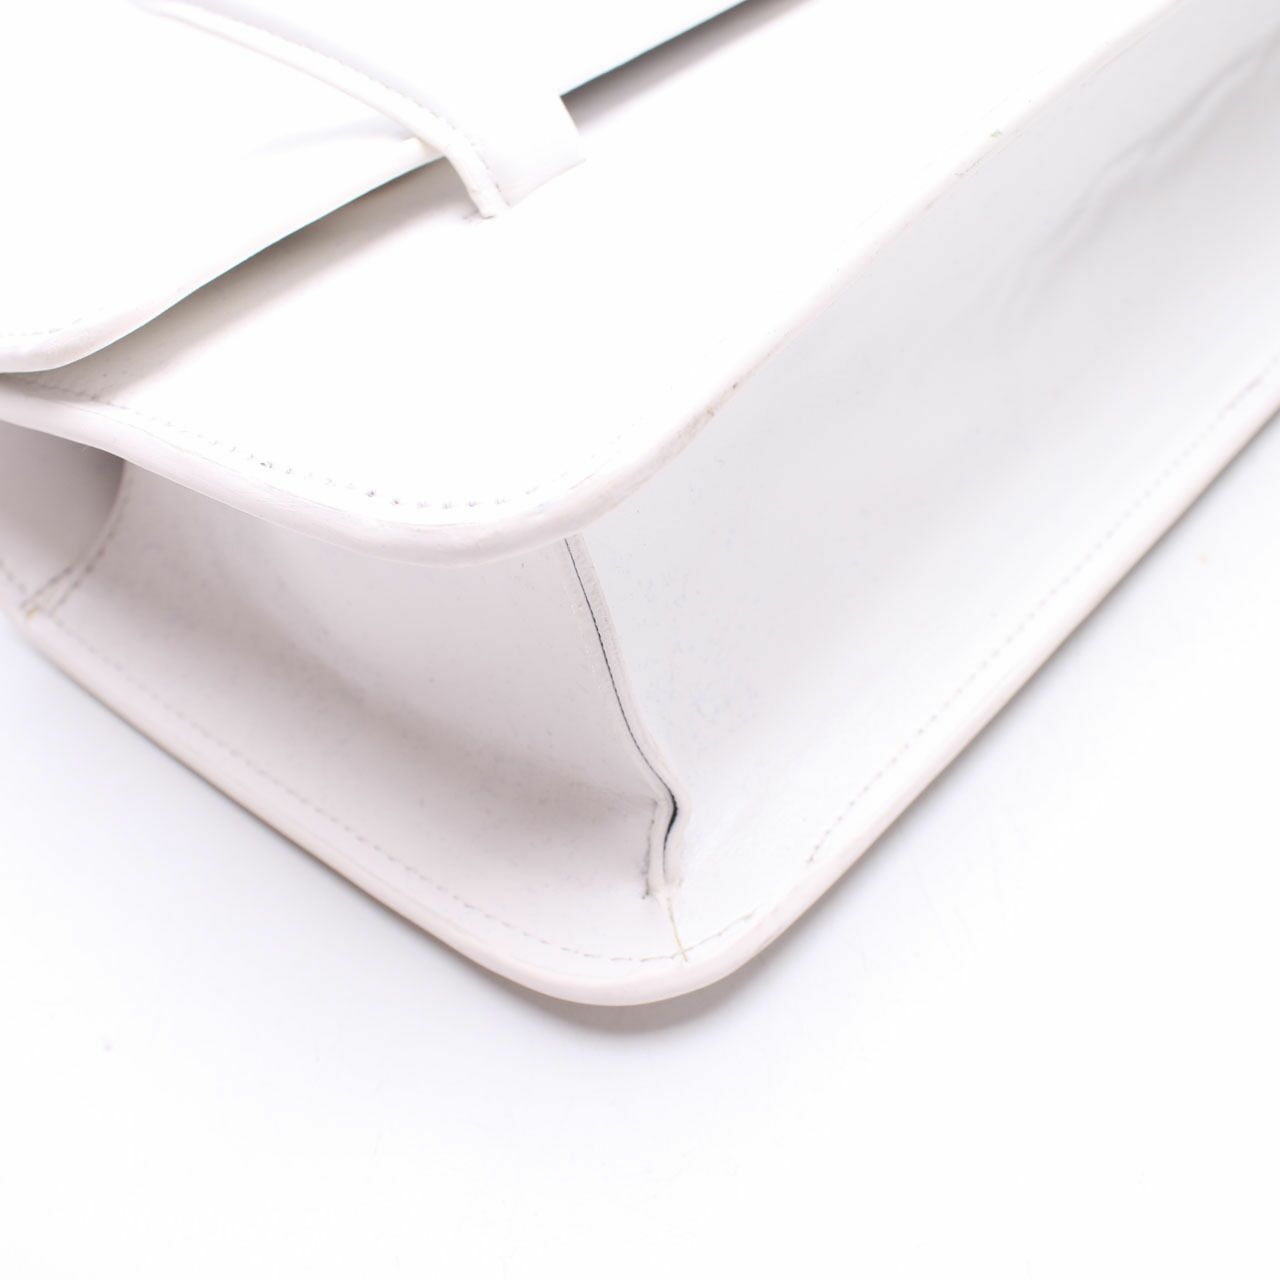 Chapelet White Leather Shoulder Bag